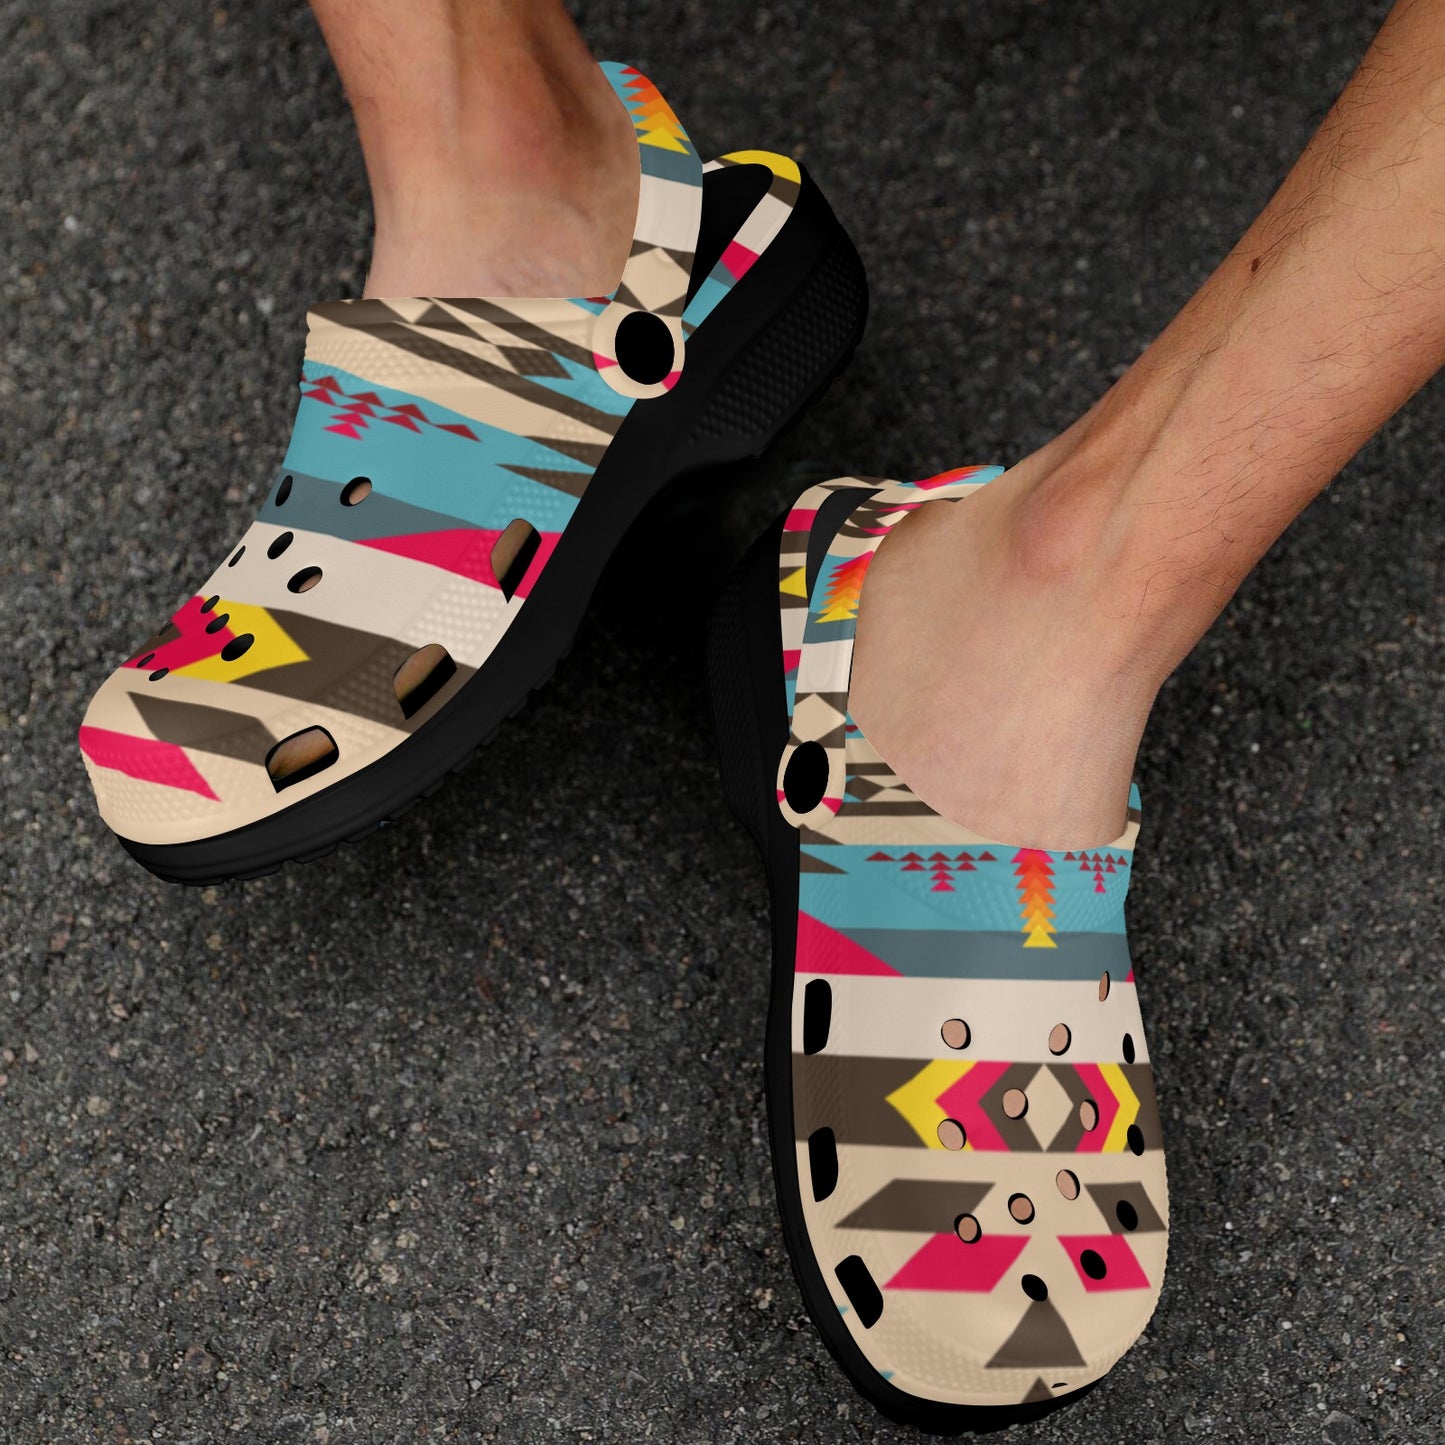 Colorful Aztec Clog Shoes